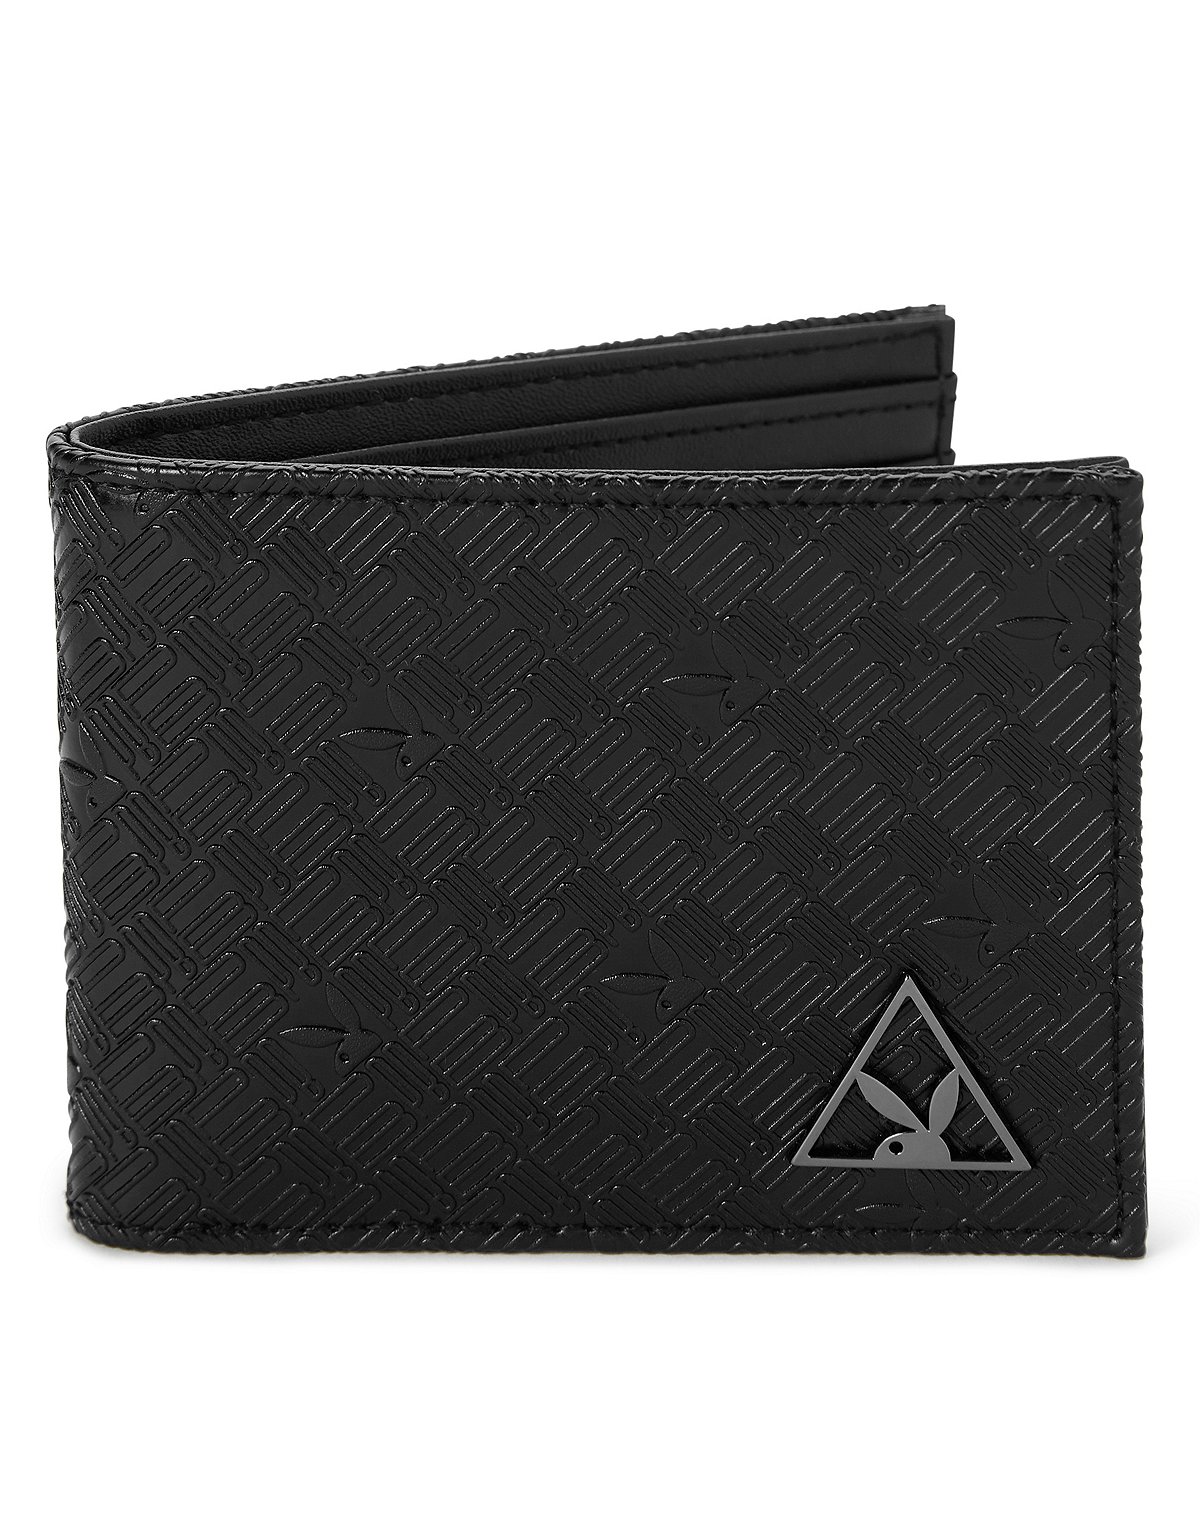 Playboy wallet